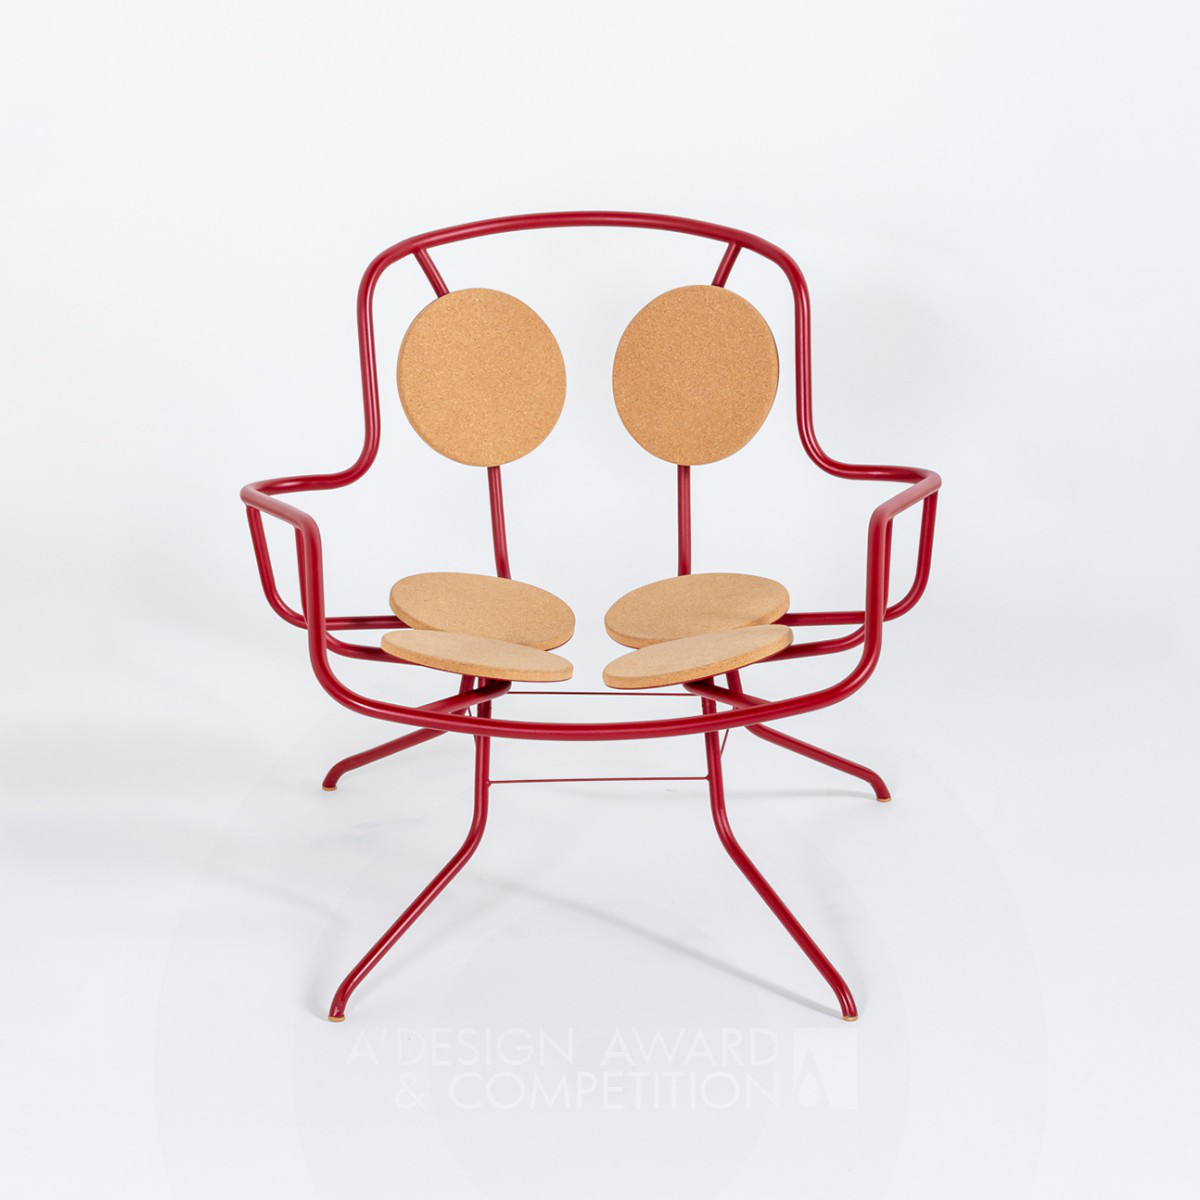 Haragana: Tobias Kappeler'den Yenilikçi Bir Lounge Sandalye Tasarımı